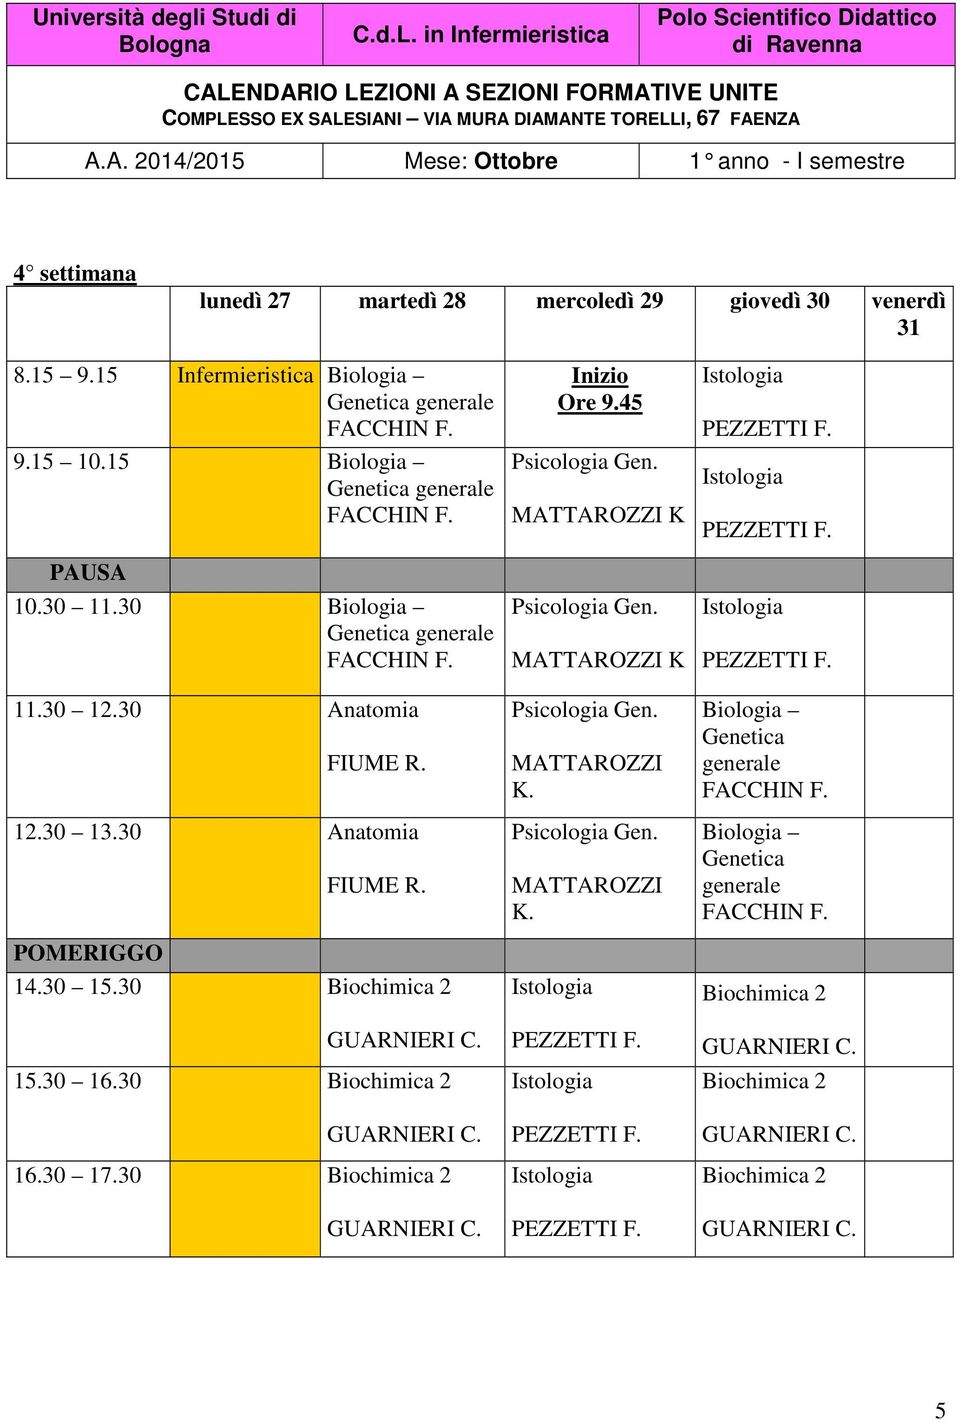 30 15.30 Biochimica 2 GUARNIERI C. 15.30 16.30 Biochimica 2 GUARNIERI C. 16.30 17.